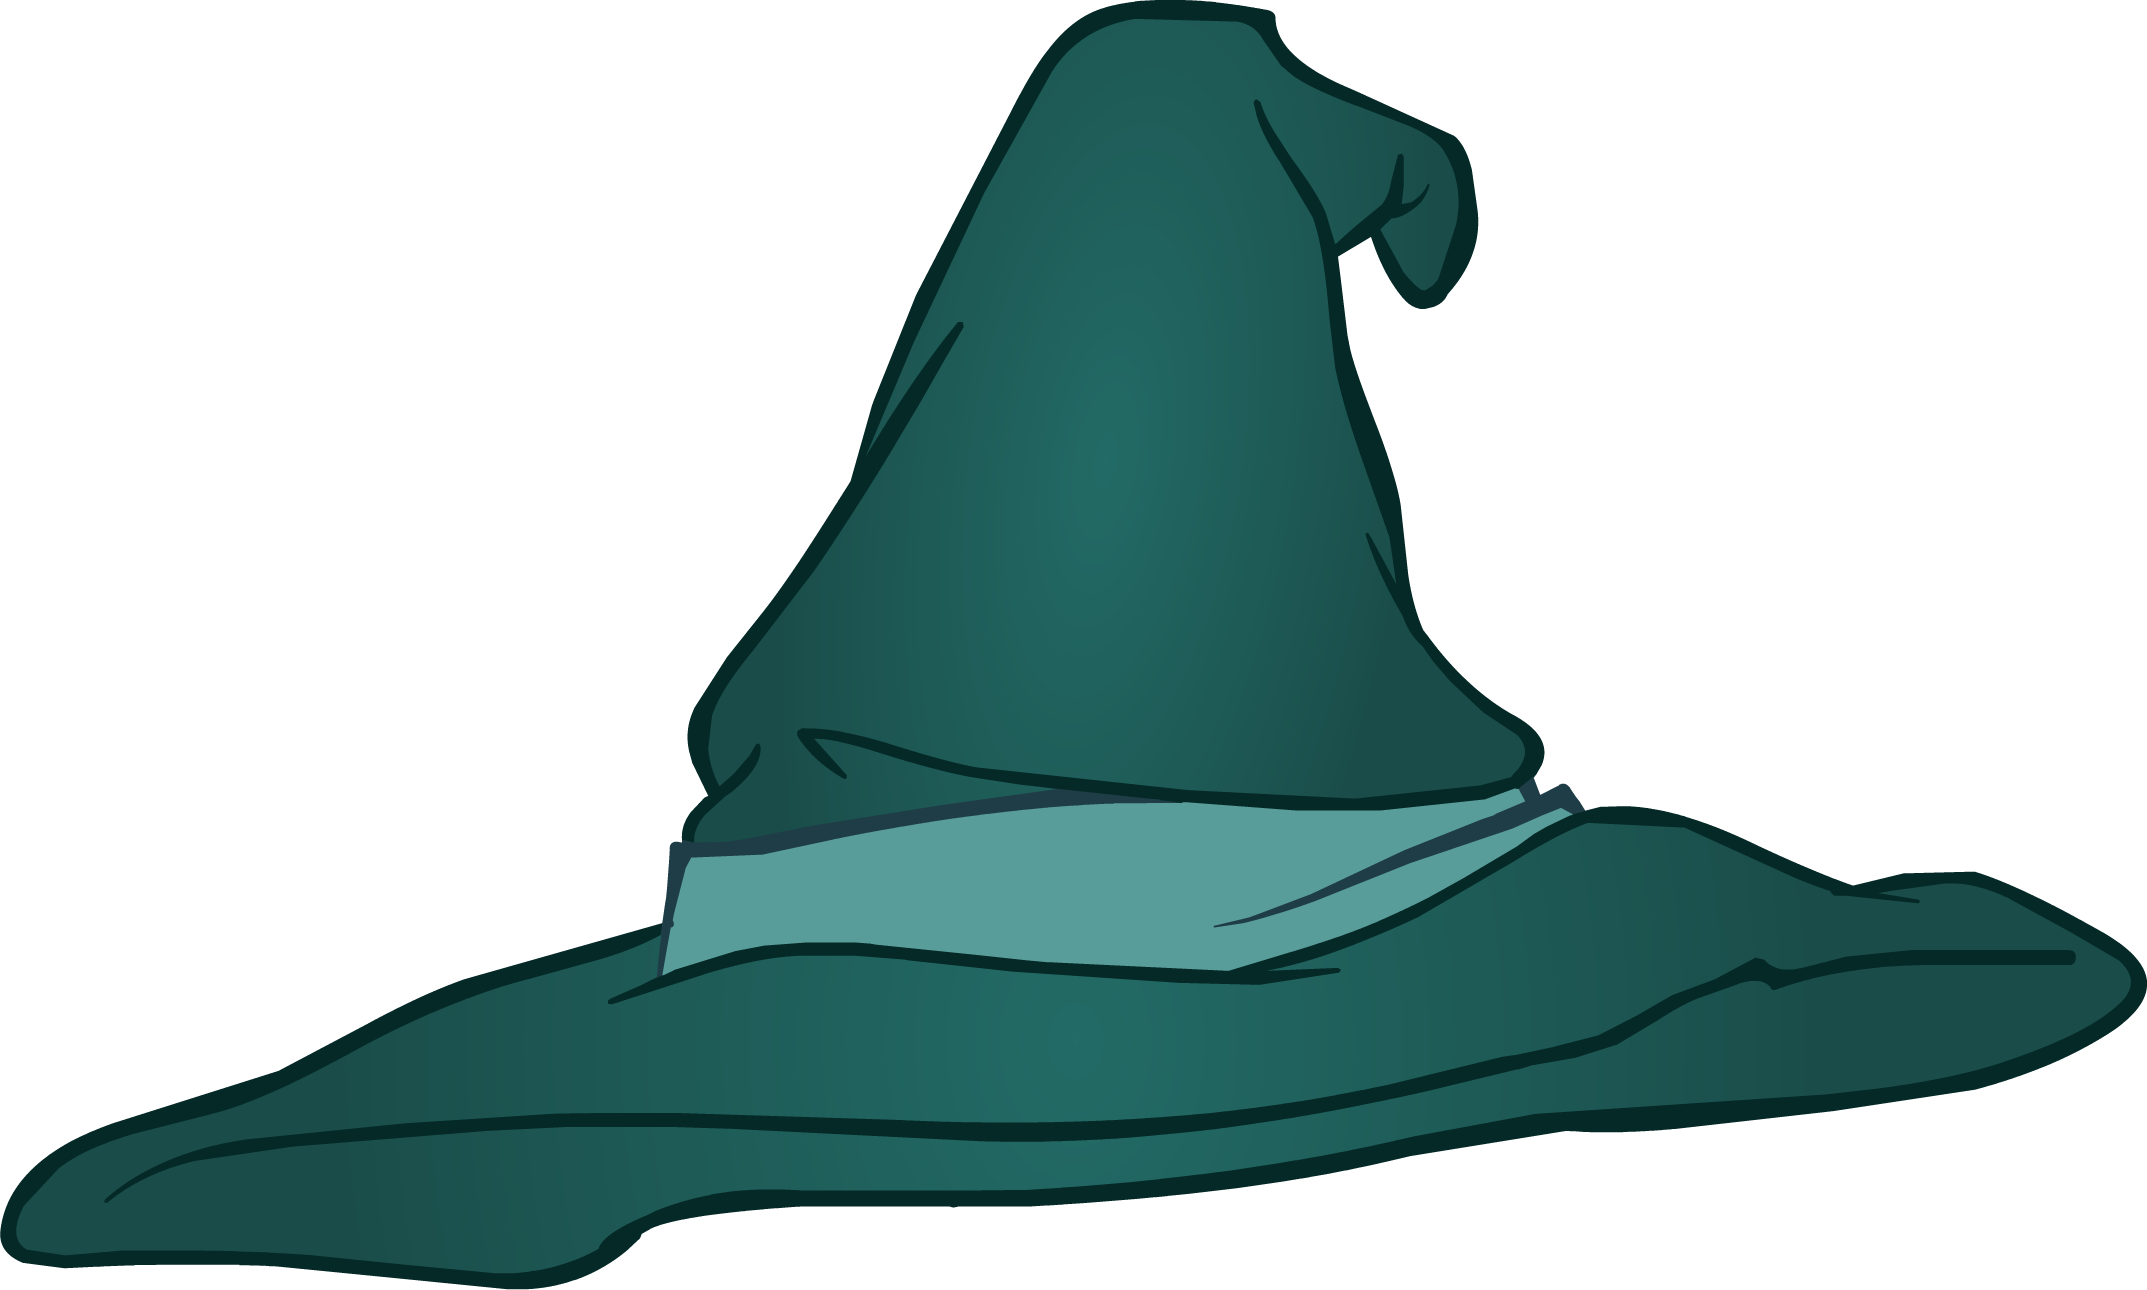 Magic Hat - Club Penguin Magic Hat (2147x1290)